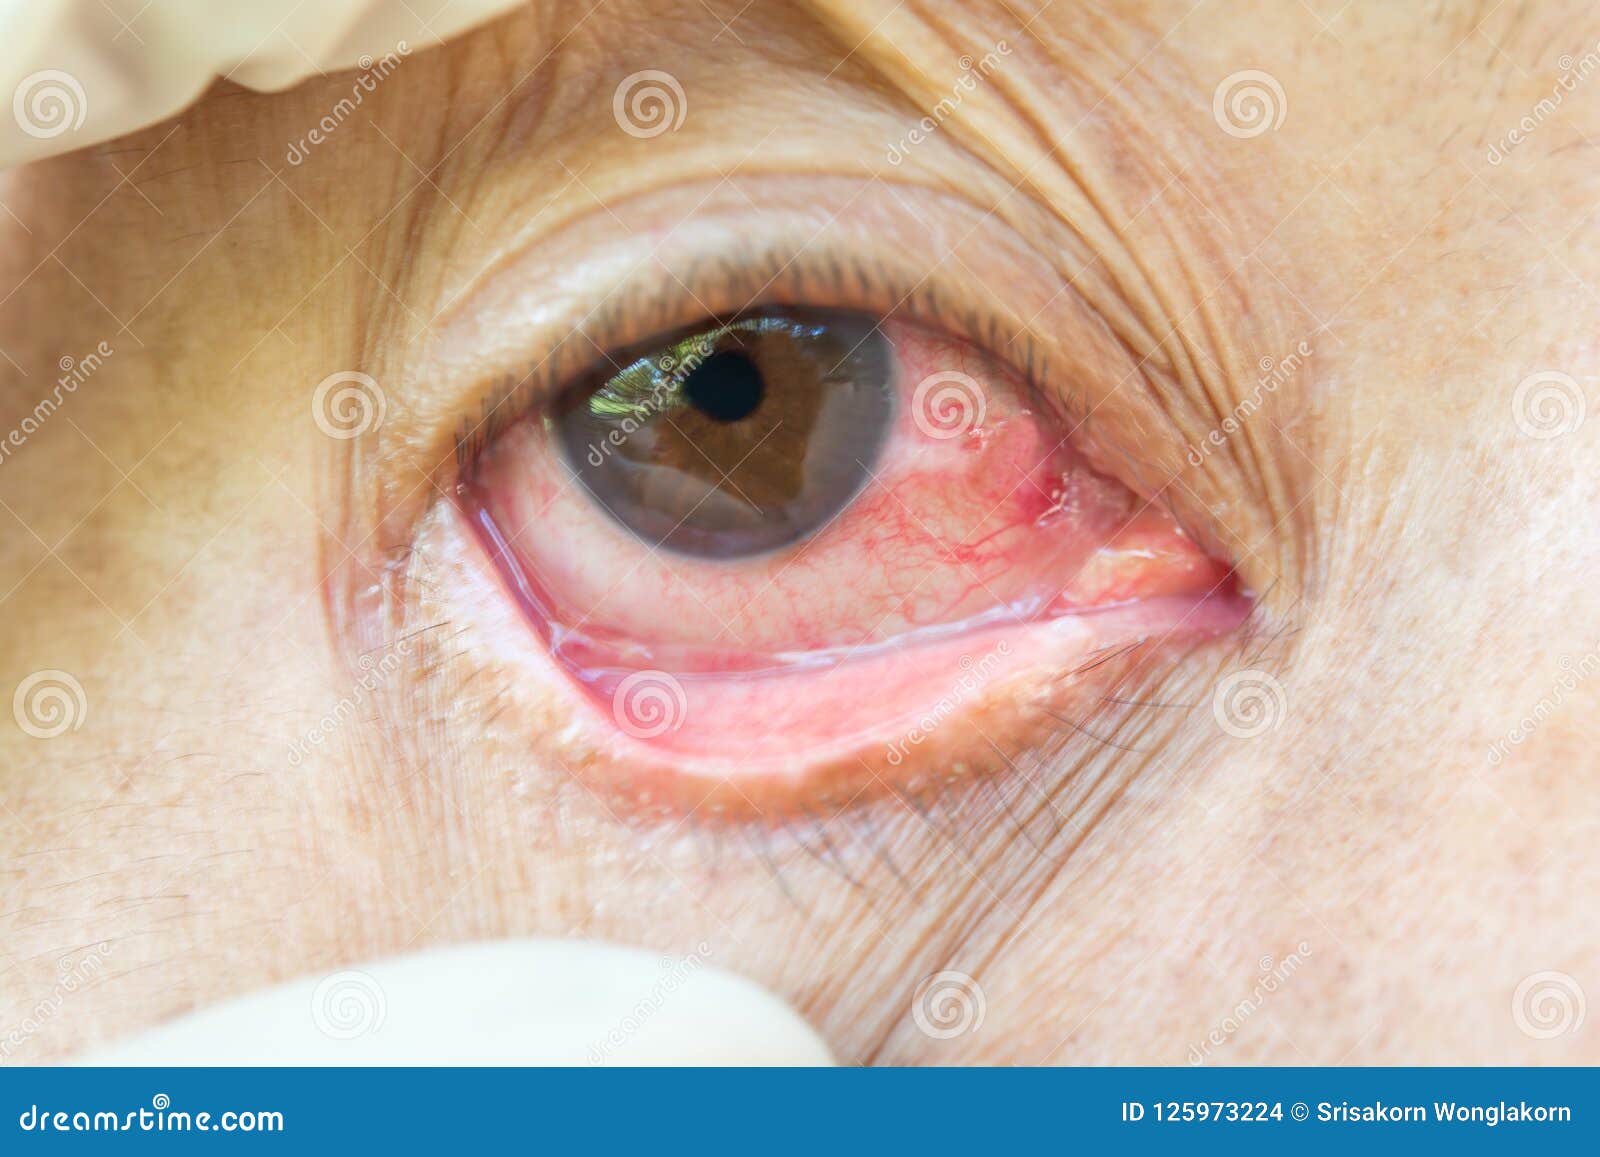 pterygium in eye